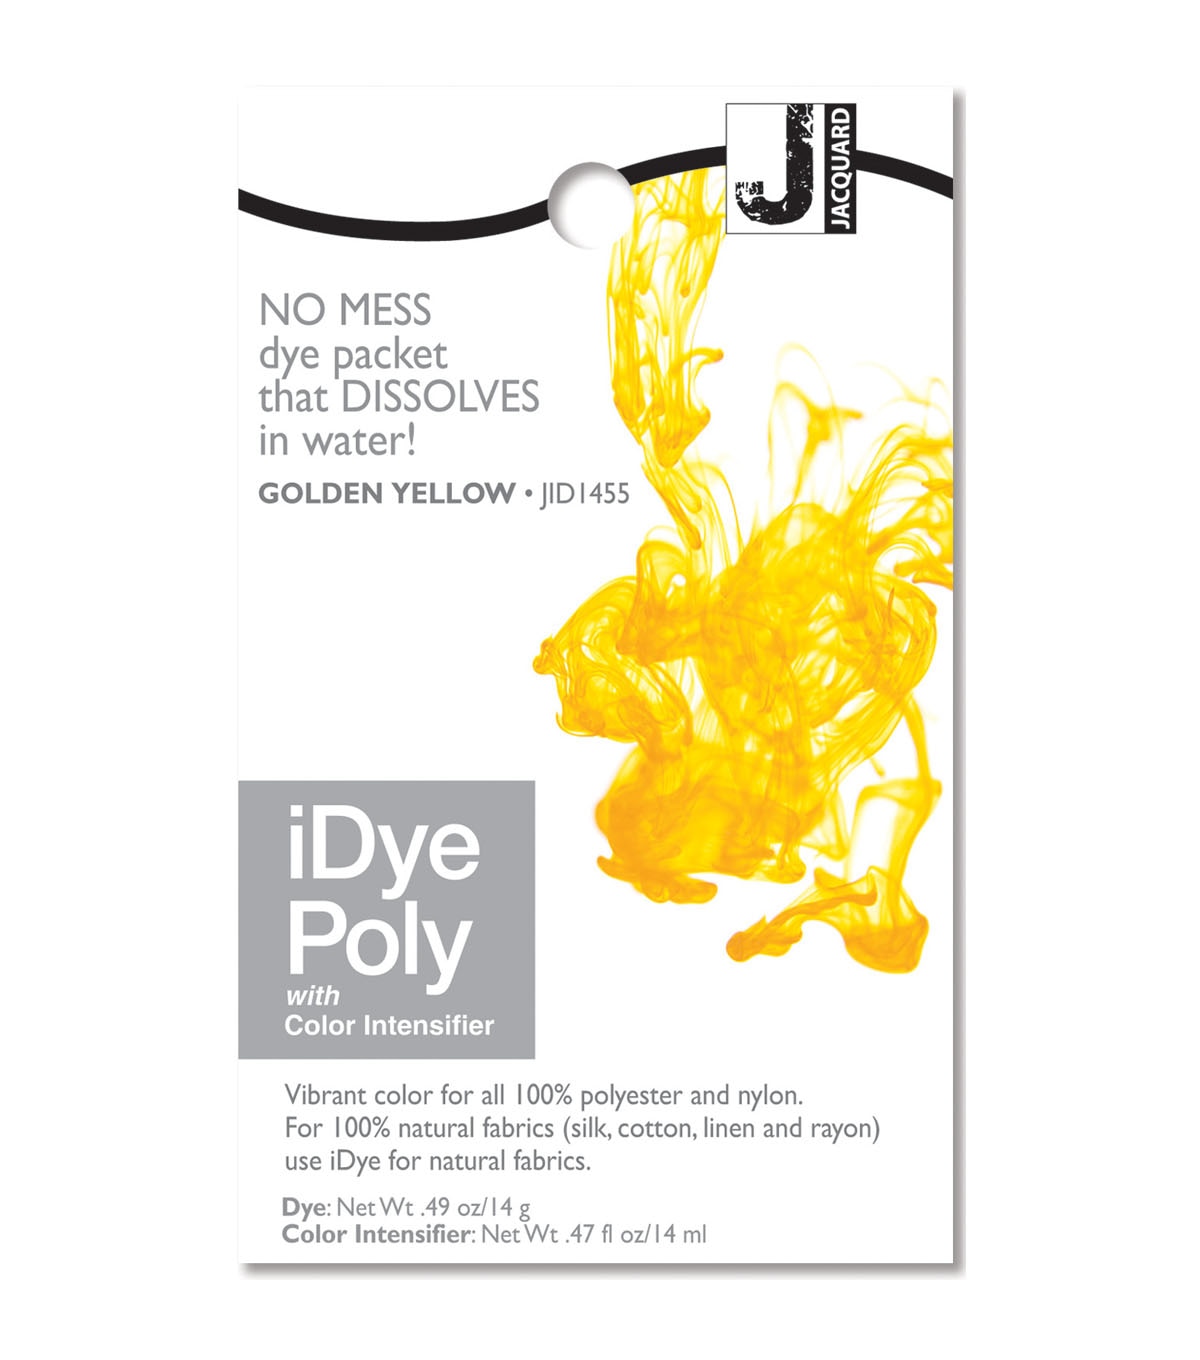 Jacquard iDye Natural Fabric Dye